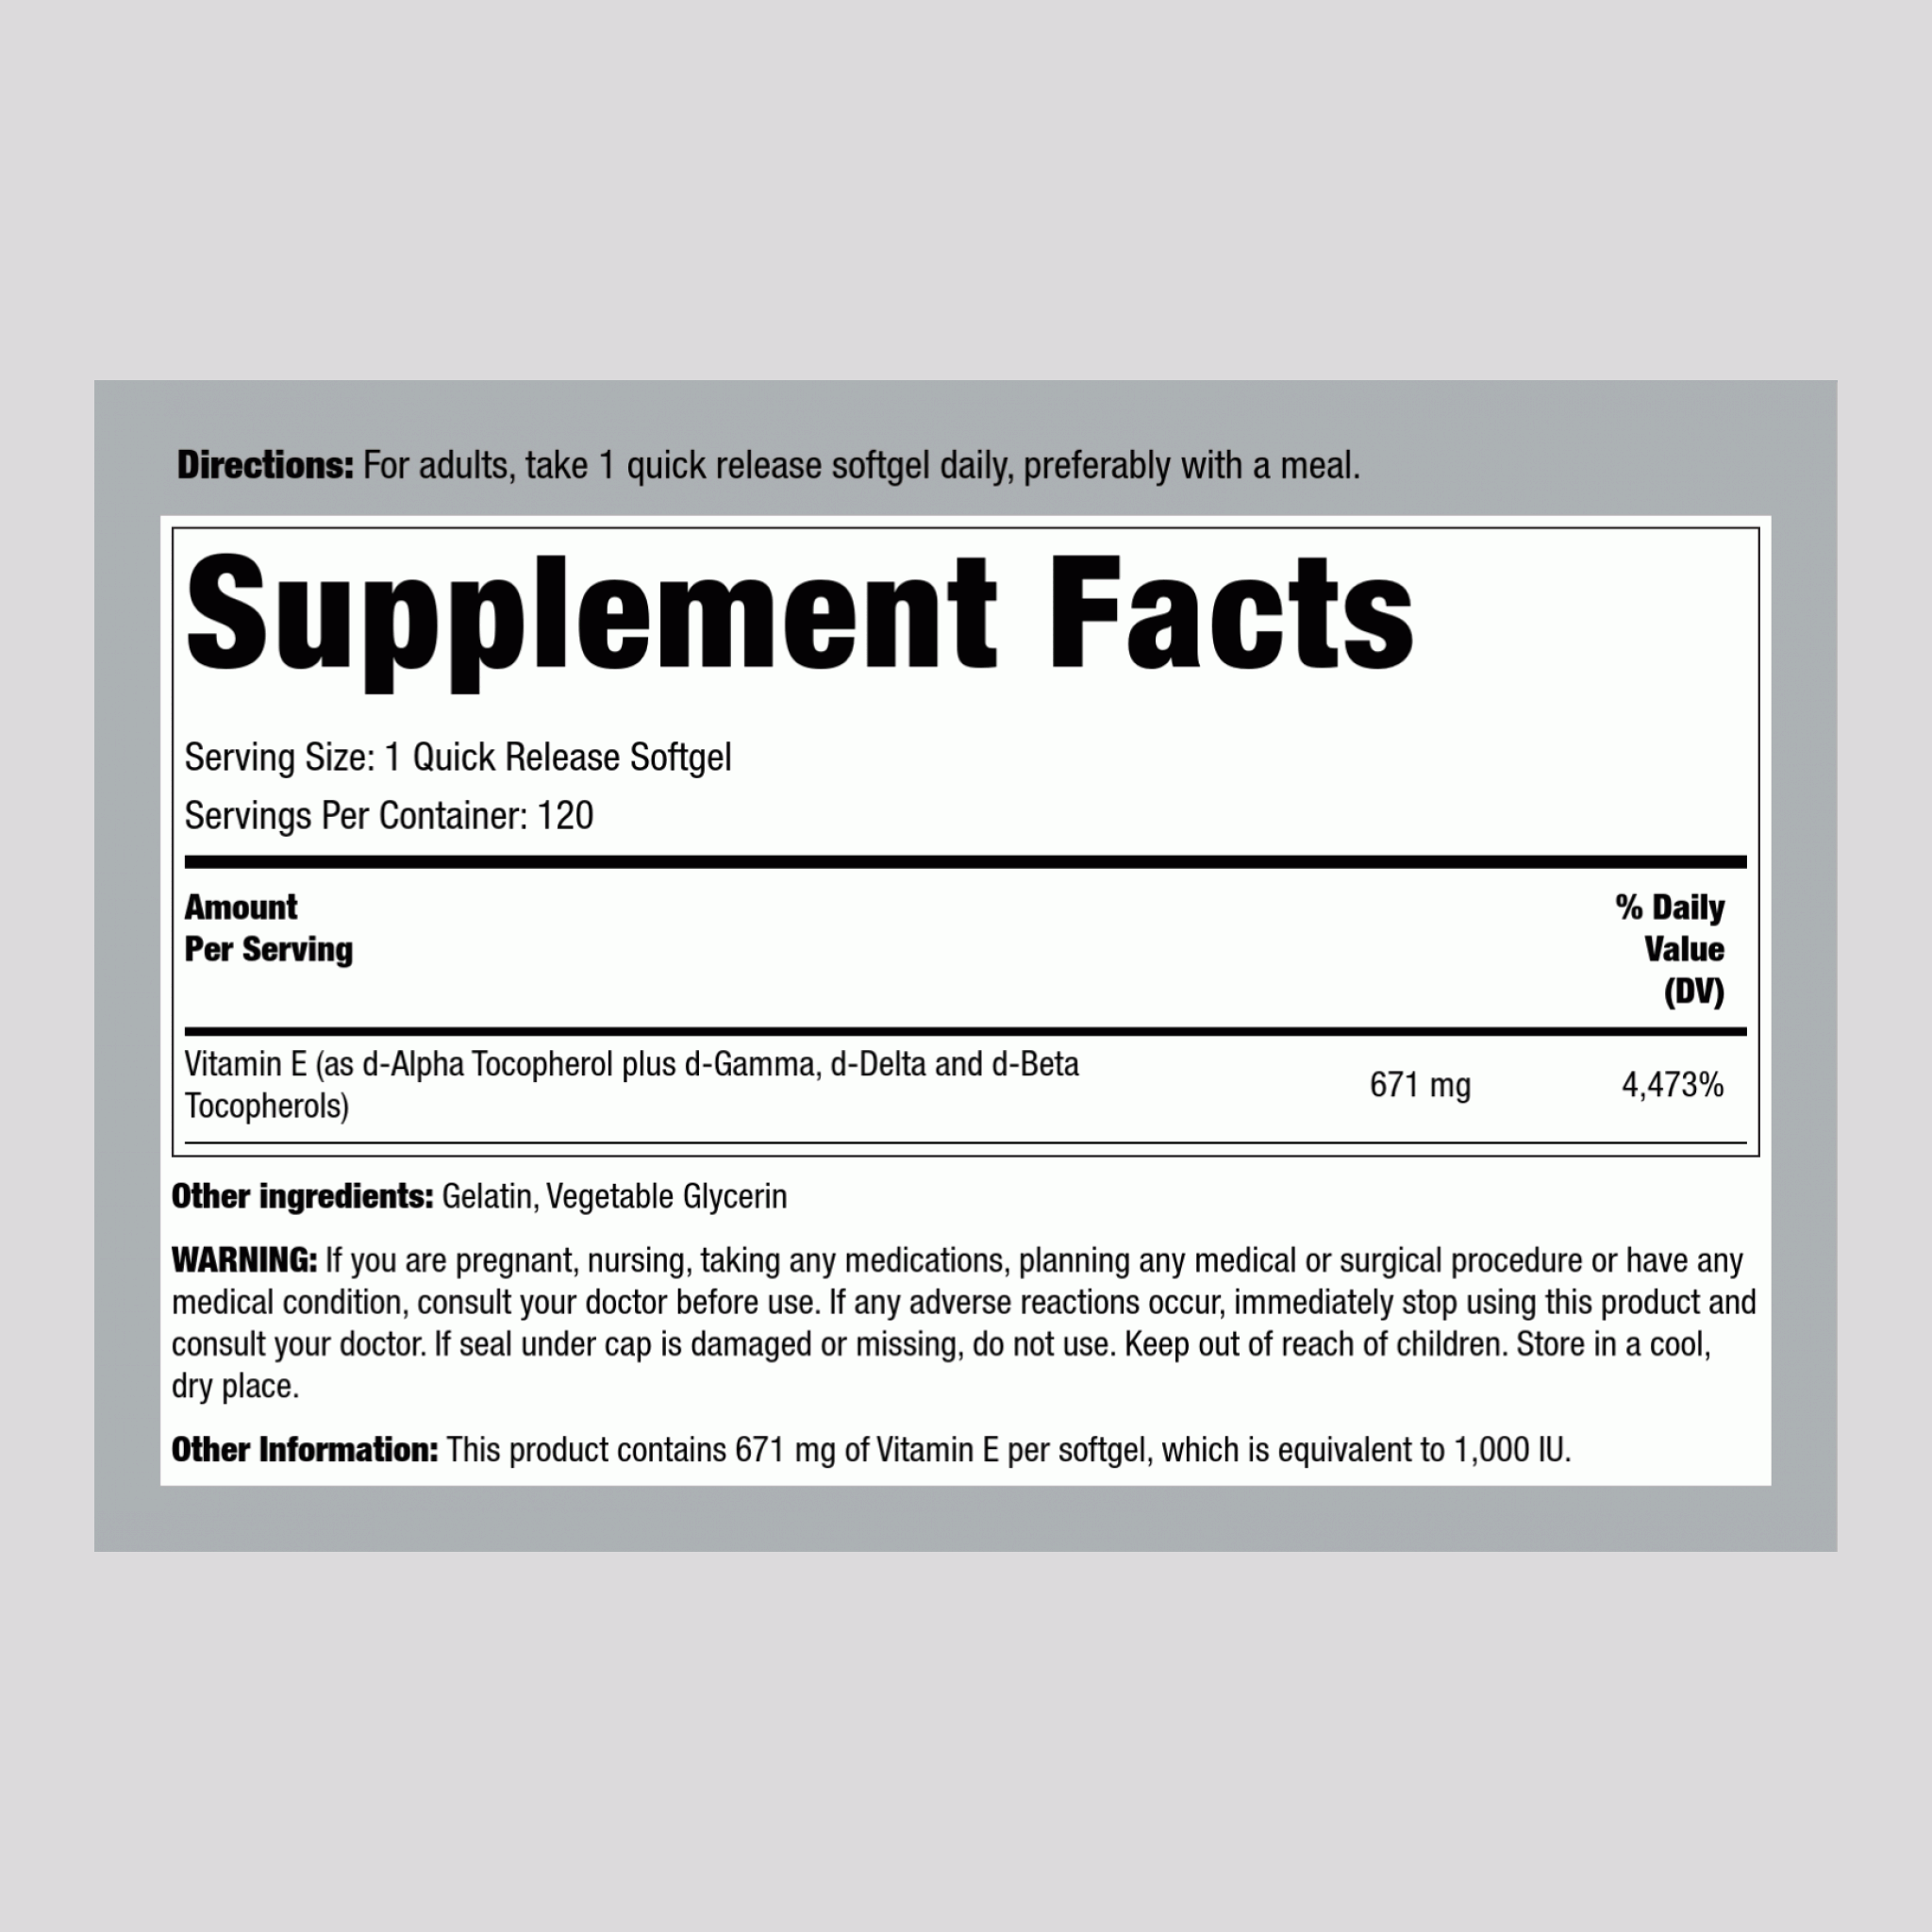 Natural Vitamin E plus Mixed Tocopherols, 1000 IU, 120 Quick Release Softgels